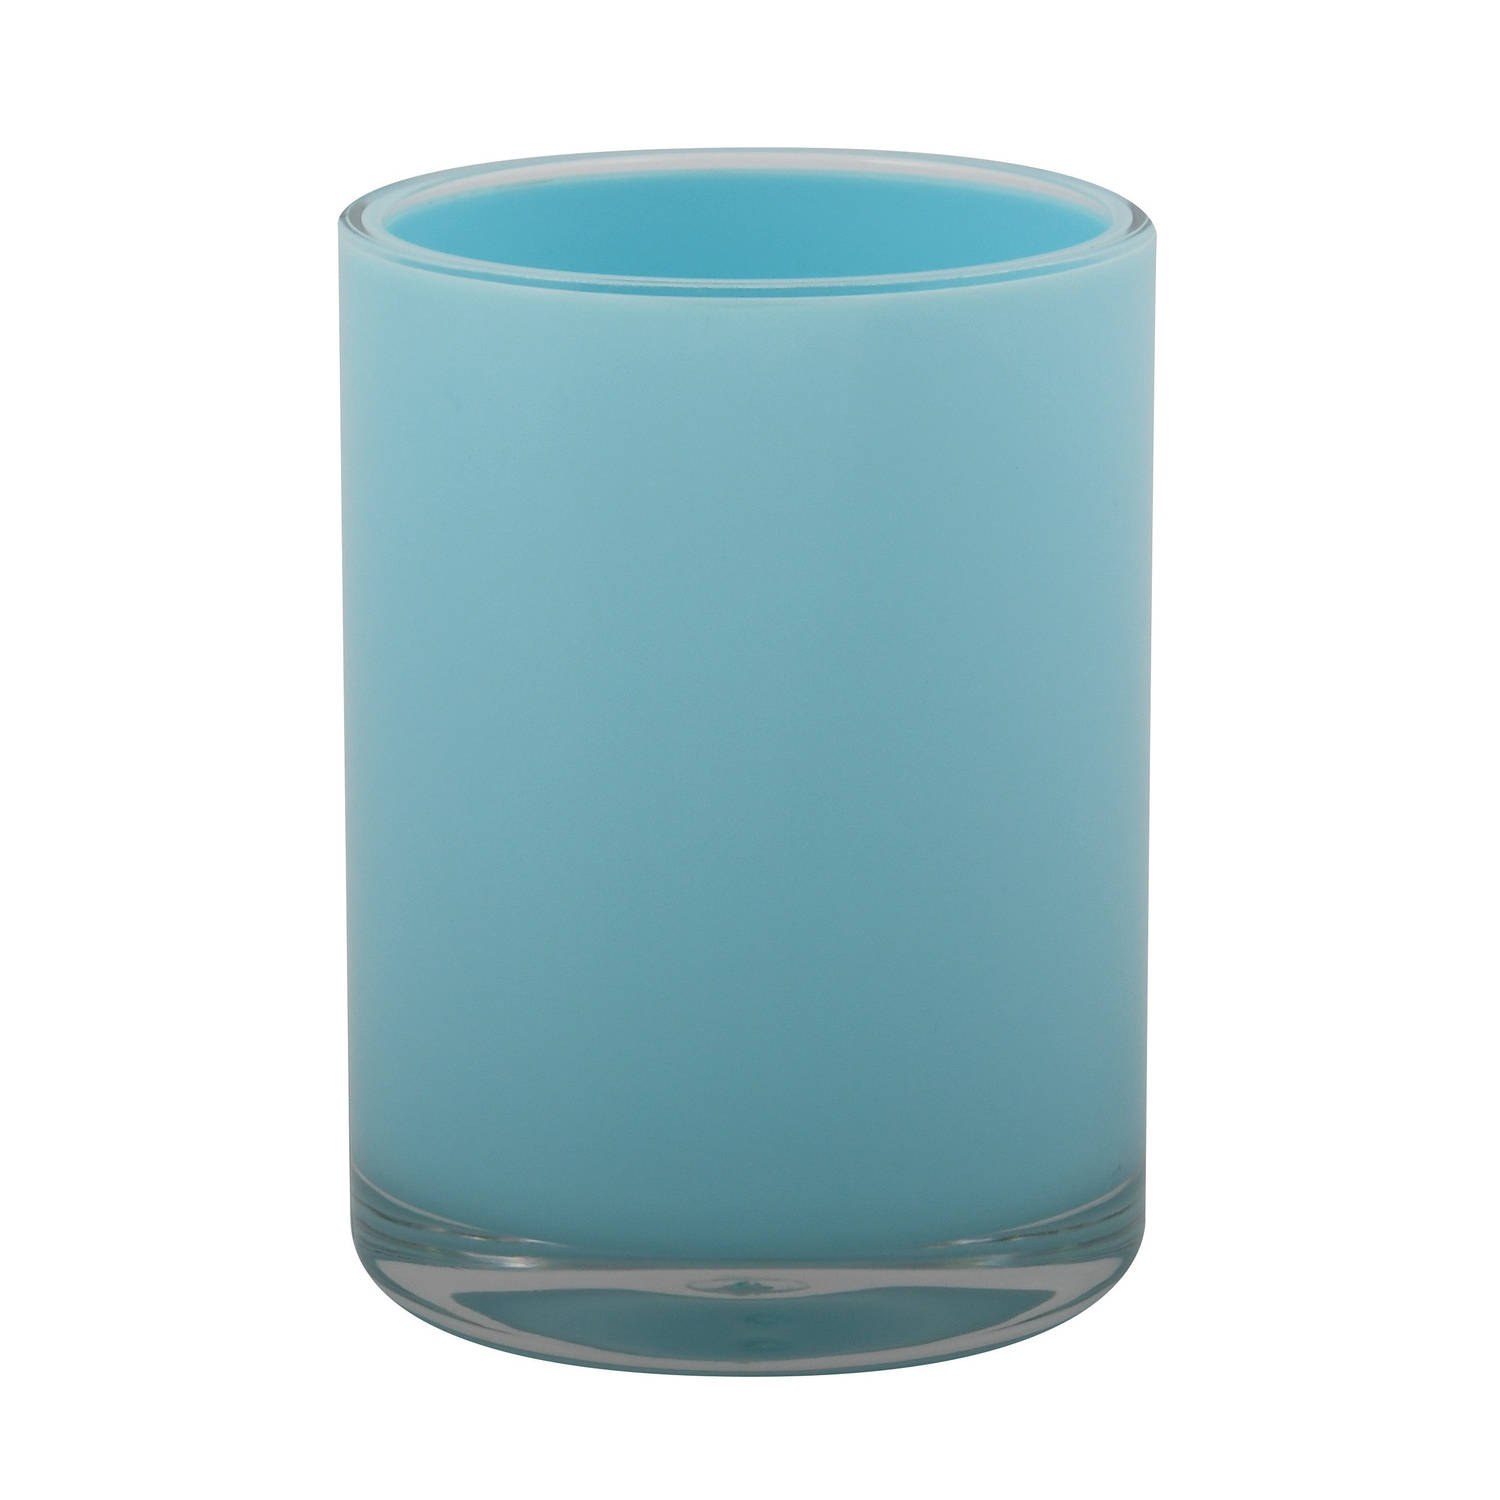 MSV Badkamer drinkbeker/tandenborstelhouder Aveiro - PS kunststof - lichtblauw - 7 x 9 cm